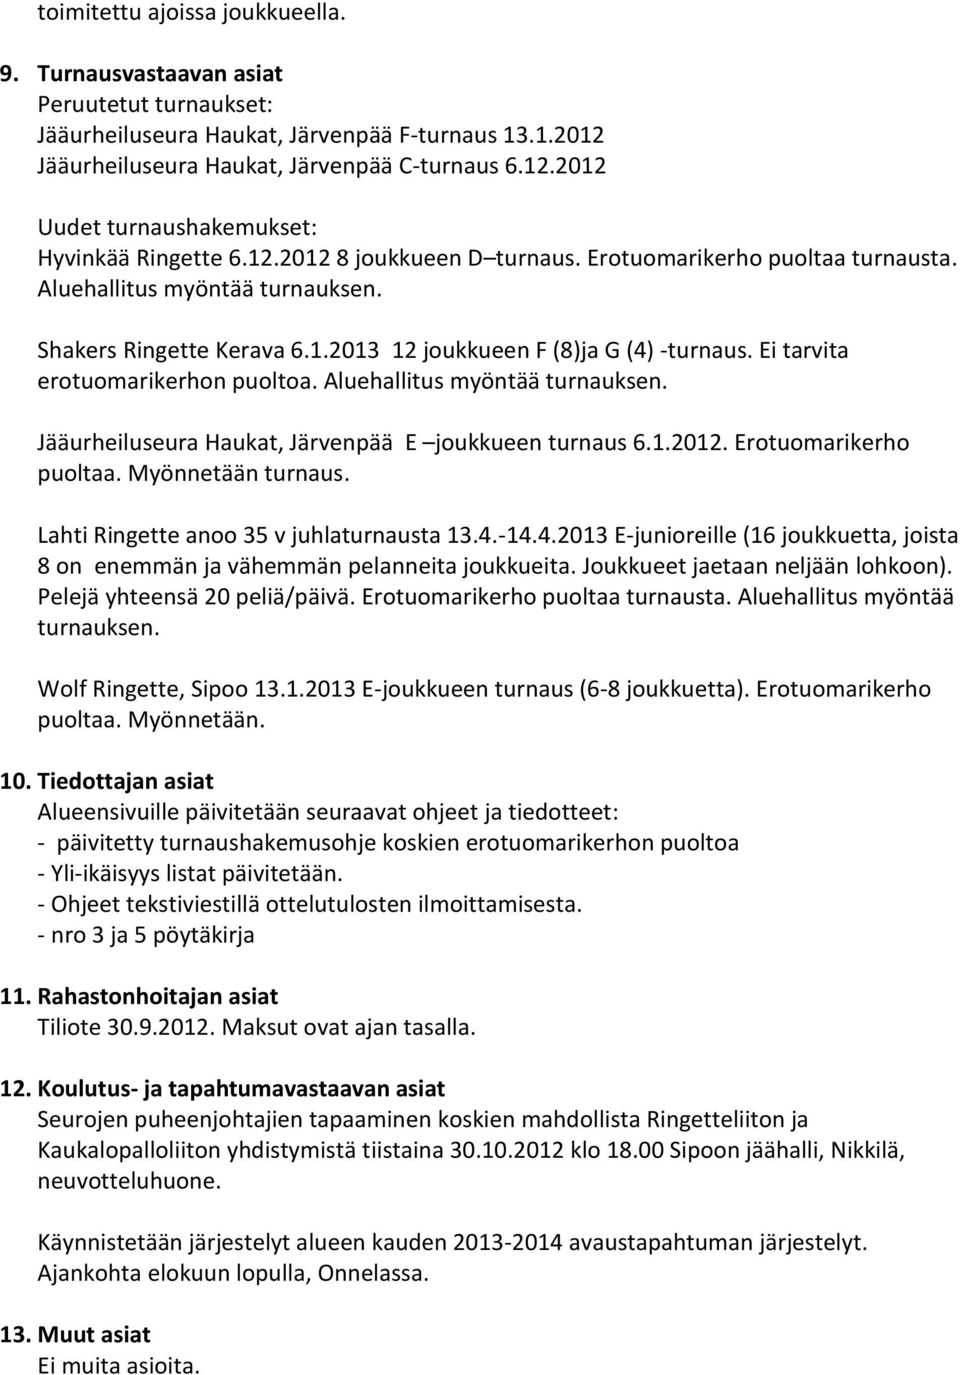 Ei tarvita erotuomarikerhon puoltoa. Aluehallitus myöntää turnauksen. Jääurheiluseura Haukat, Järvenpää E joukkueen turnaus 6.1.2012. Erotuomarikerho puoltaa. Myönnetään turnaus.